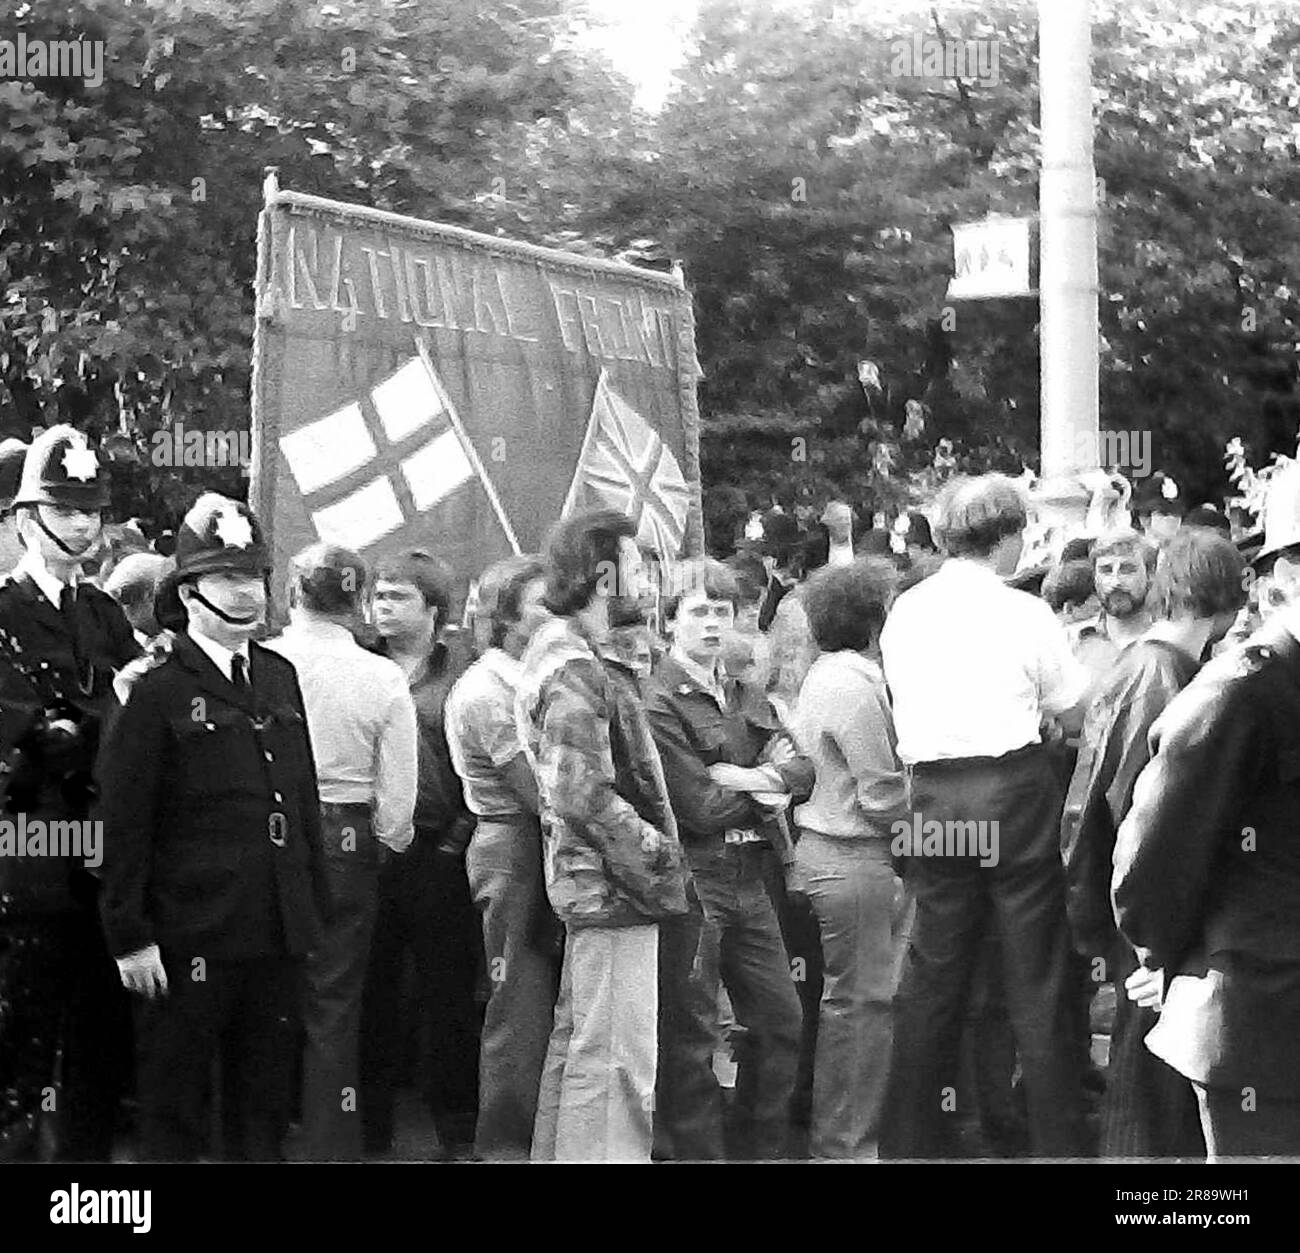 Un fronte Nazionale di estrema destra marcia, Londra, Inghilterra, Regno Unito, circondato da poliziotti, settembre 1978. Lo stesso giorno si è svolta a Londra una marcia della Lega Anti Nazi, quindi la polizia era lì in gran numero. Foto Stock